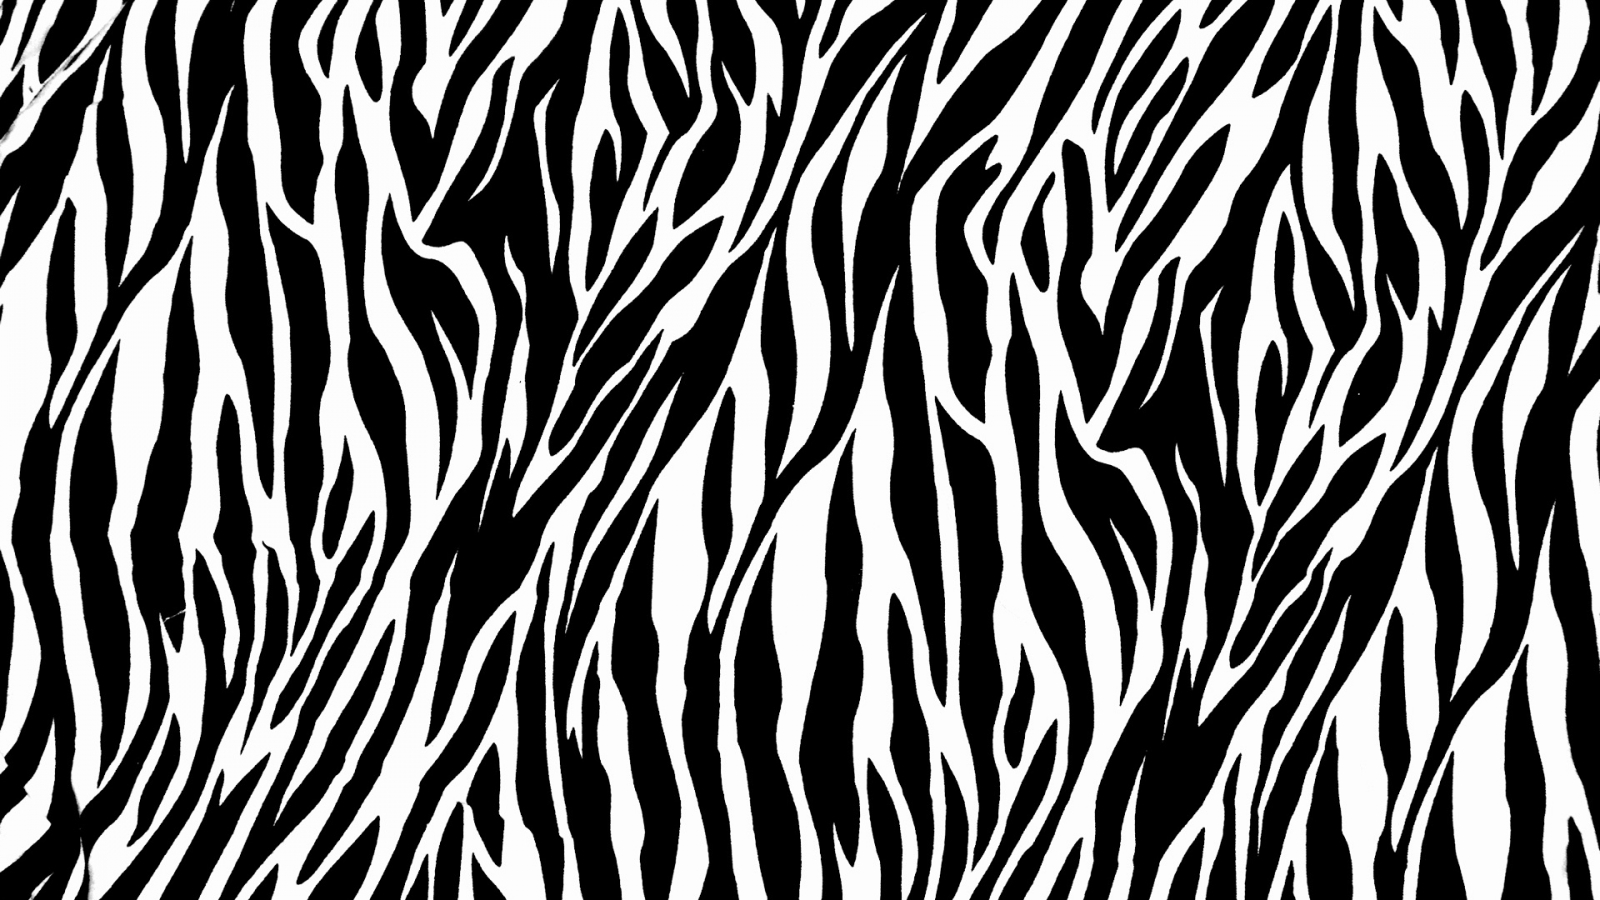 Zebra Print for 1600 x 900 HDTV resolution